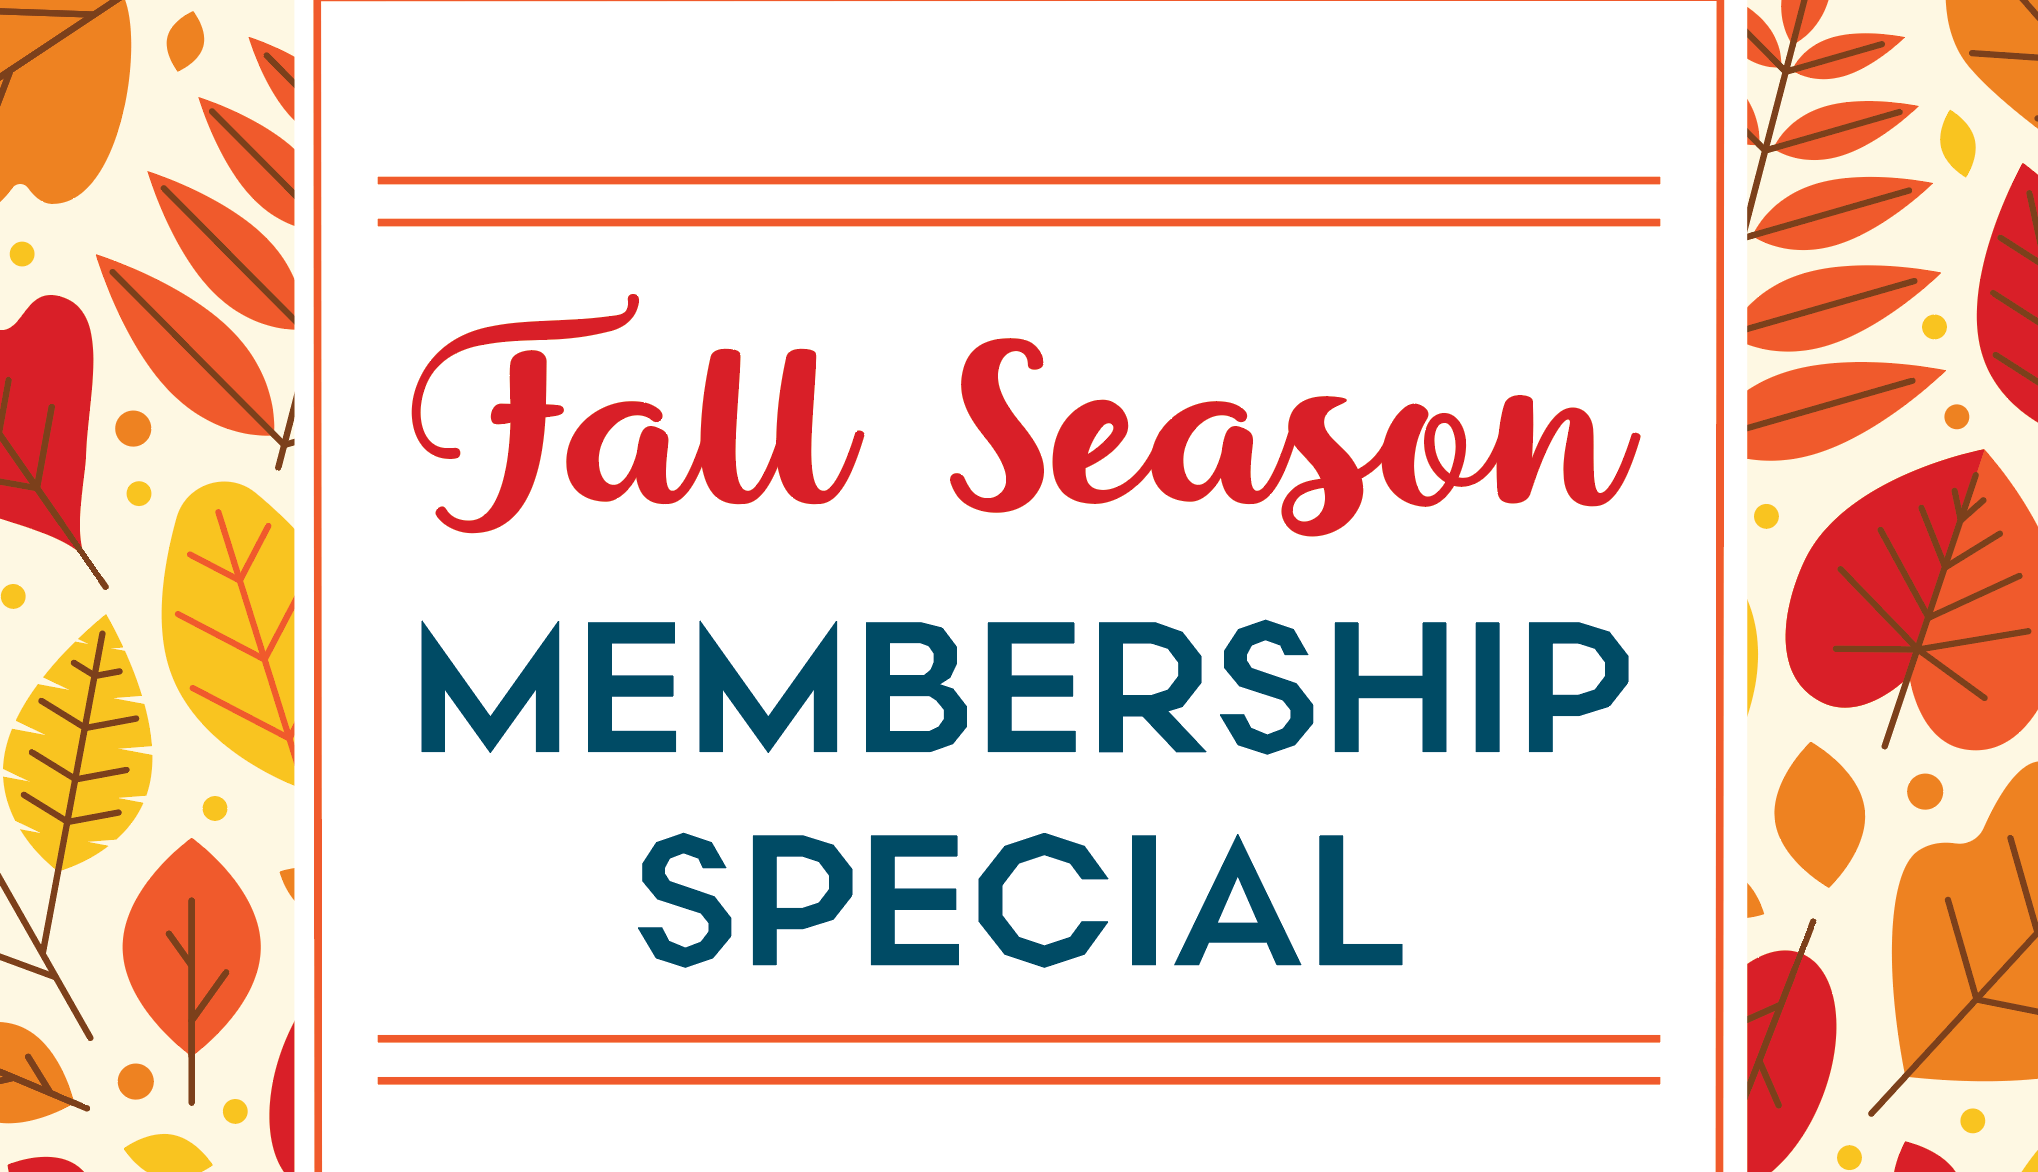 Fall Season Membership Promotion